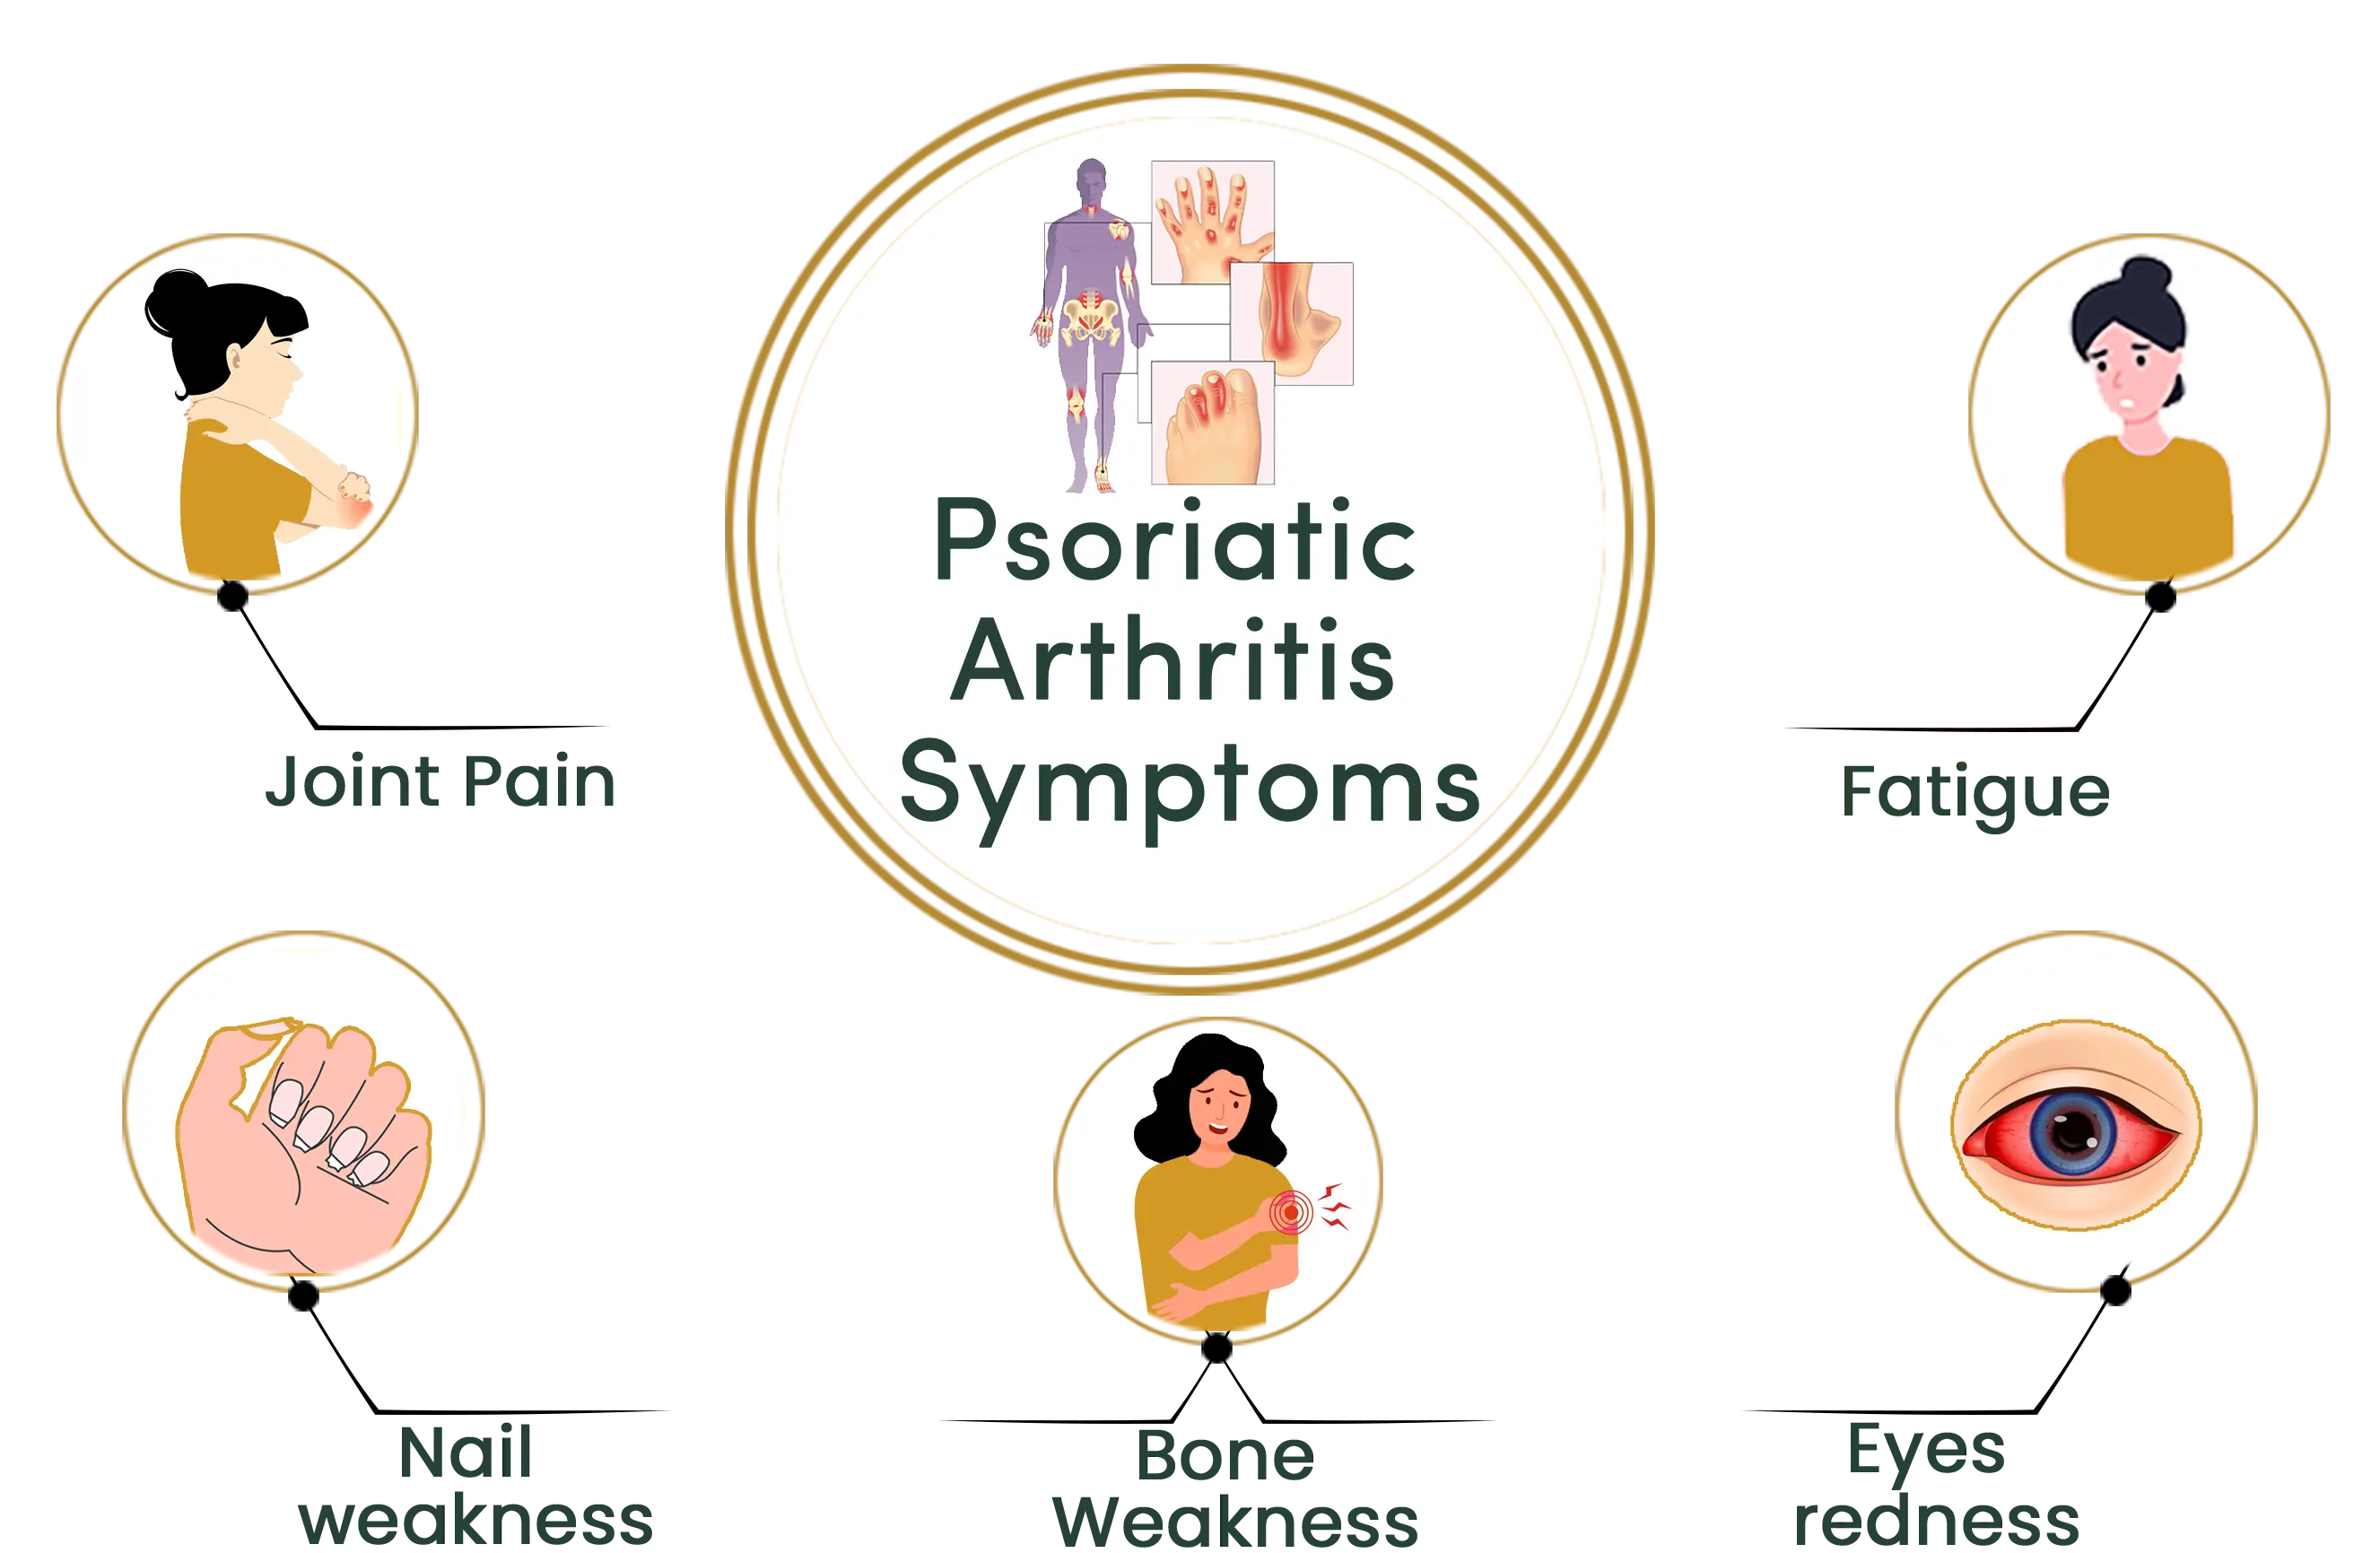 Psoriatic Arthritis symptoms